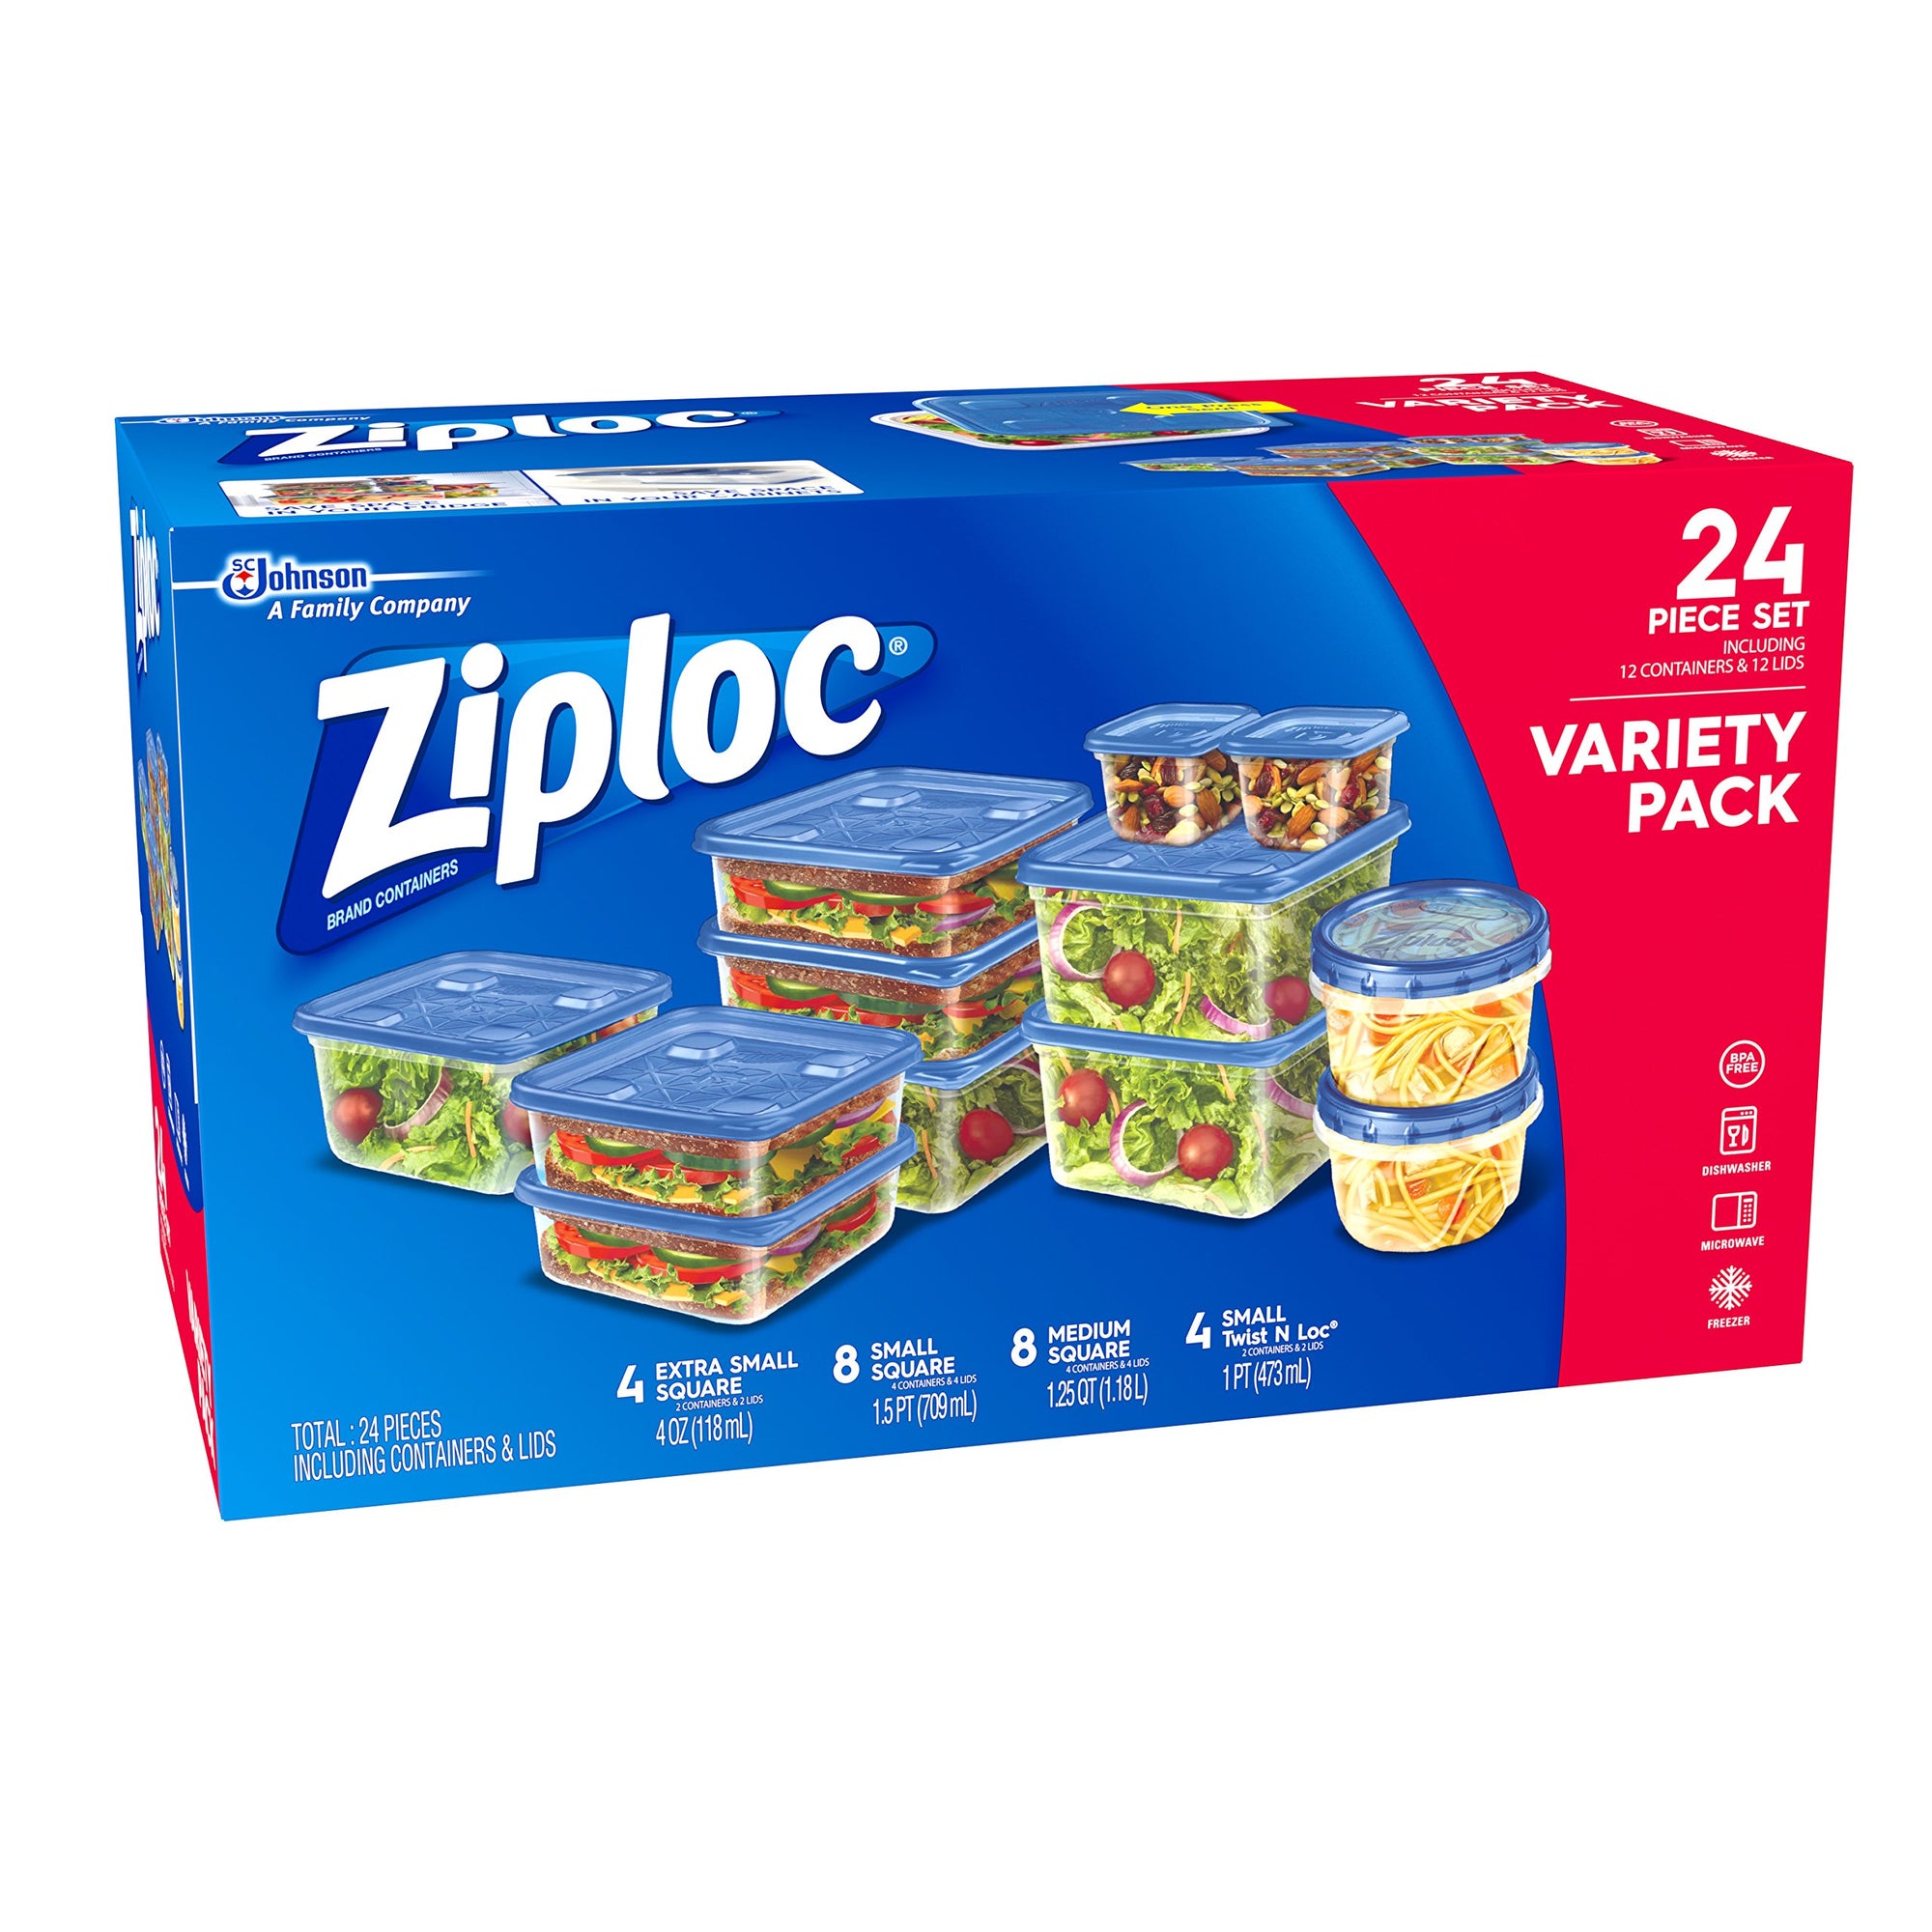 Ziploc Containers & Lids, Square, Medium, 1.25 Quart